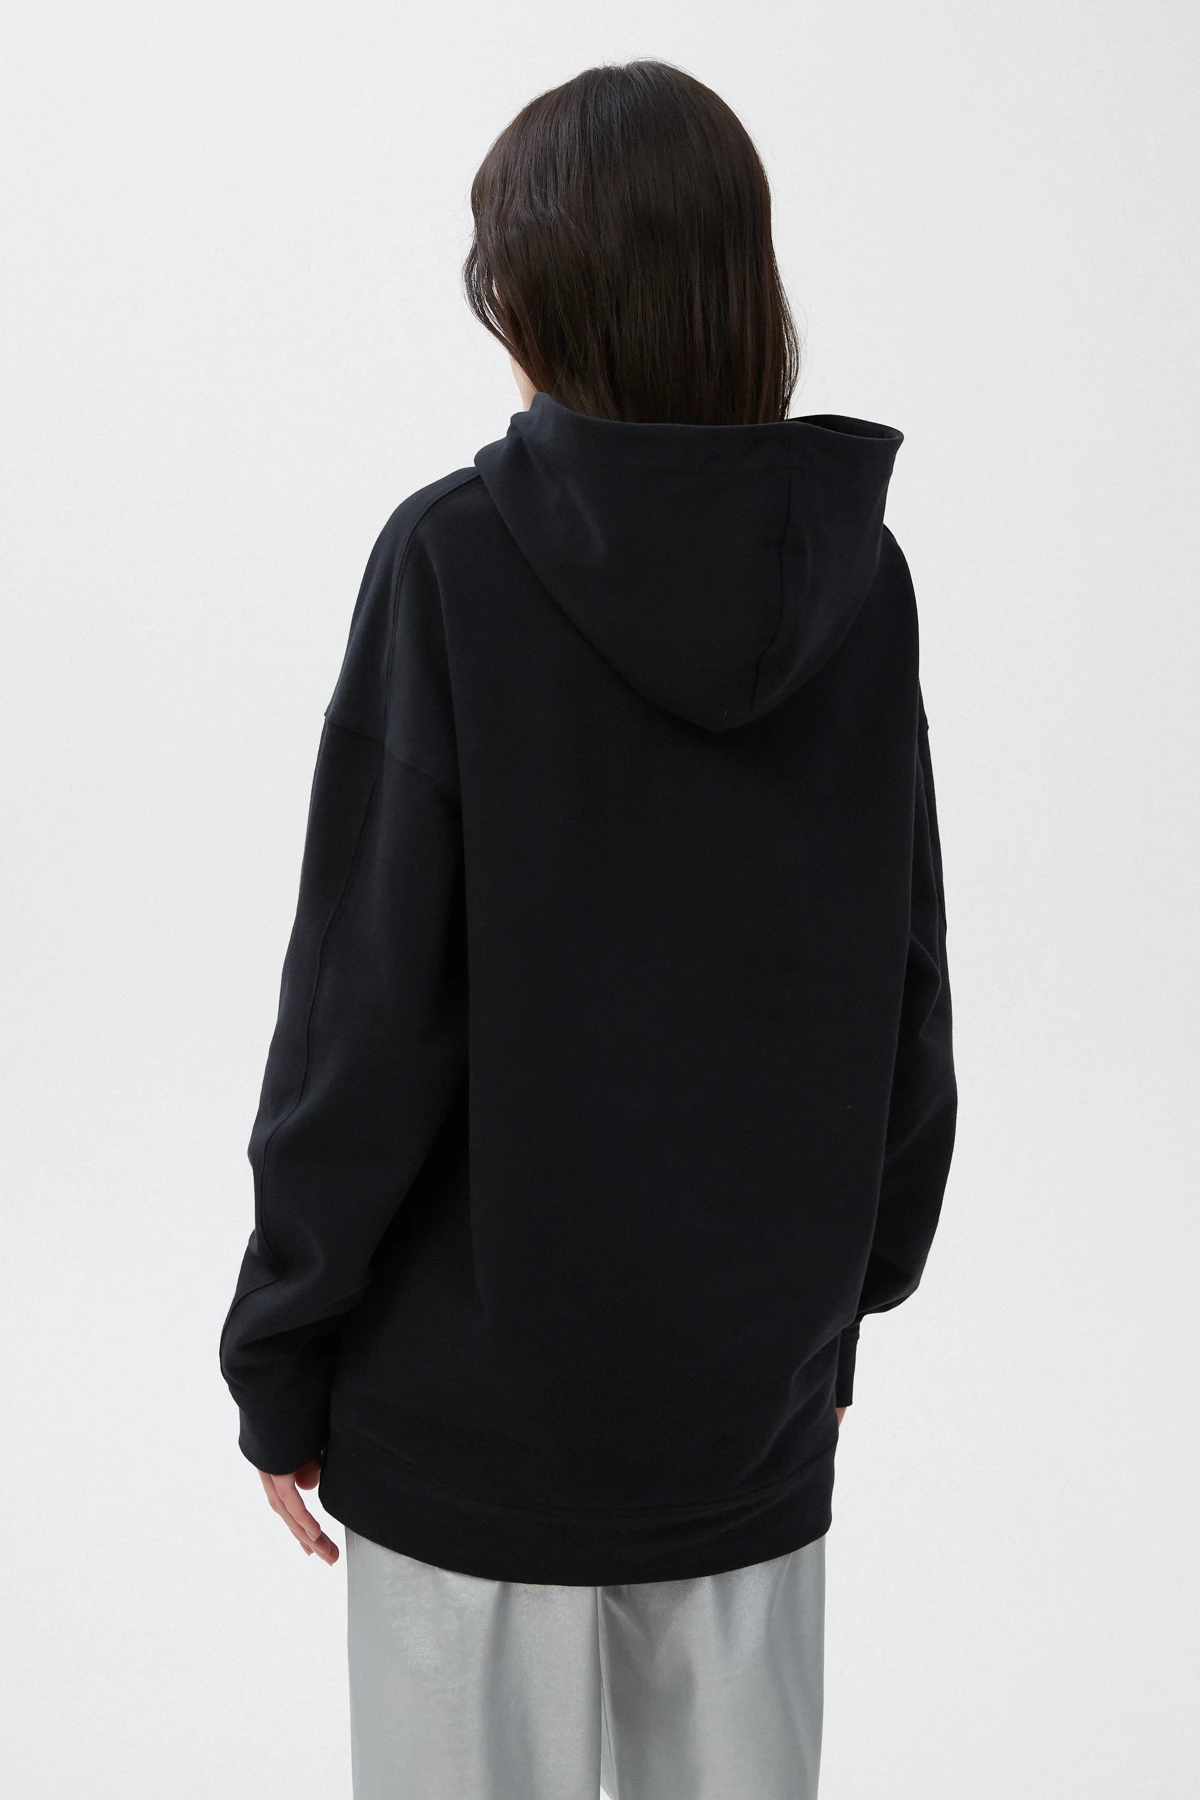 Black unisex hoodie "Holiday feeling" on fleece, photo 6